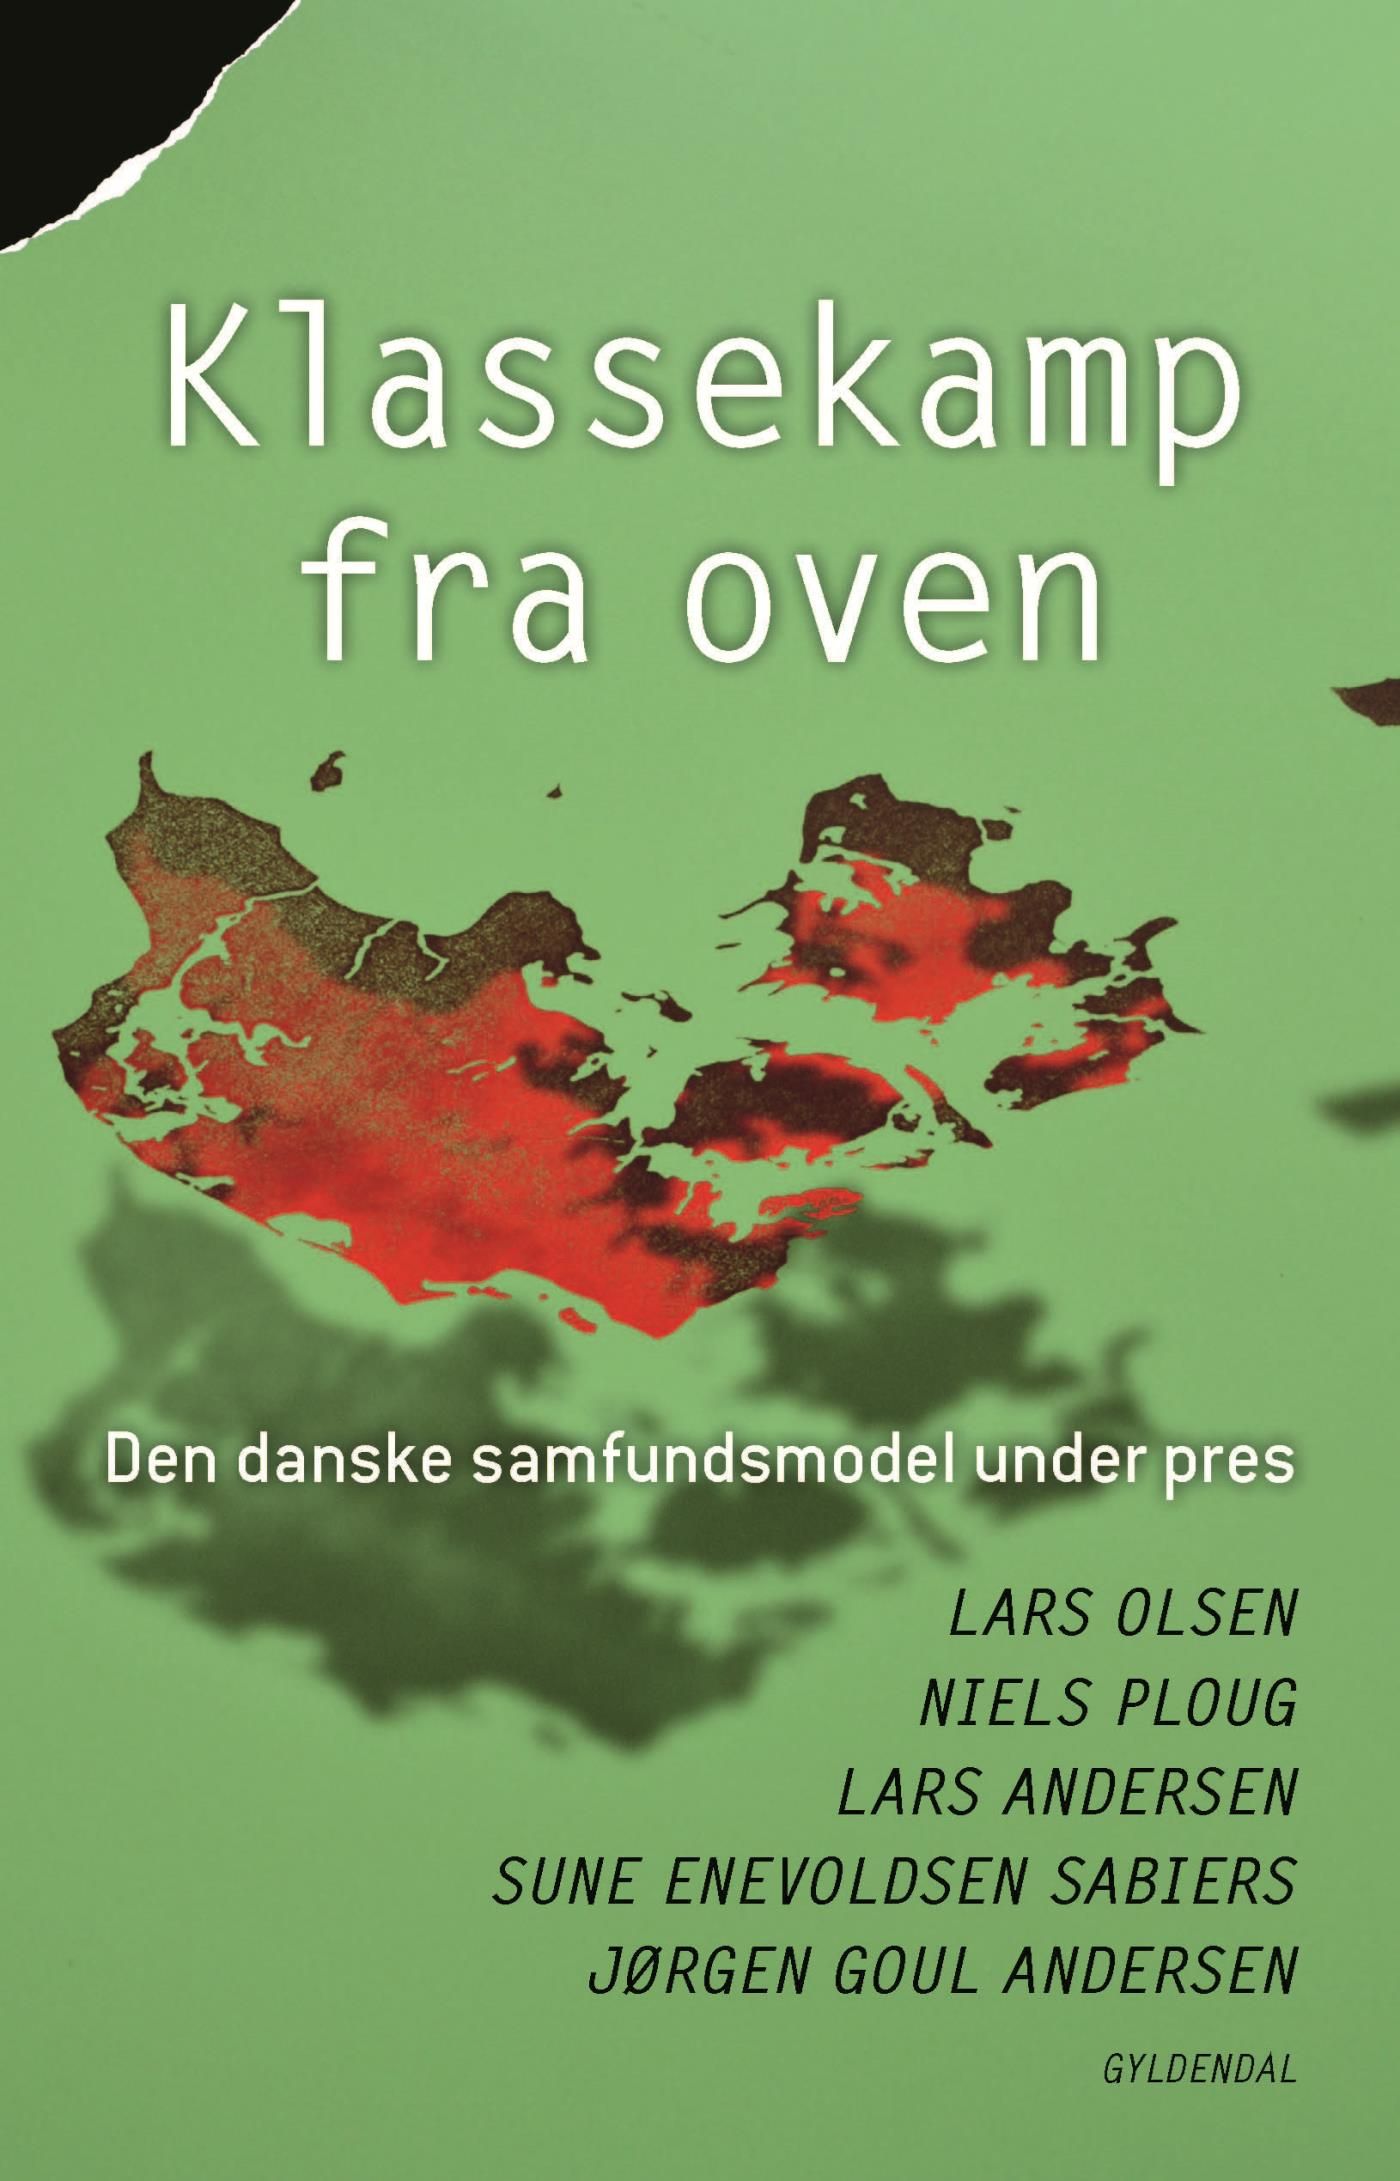 Klassekamp fra oven, eBook by Jørgen Goul Andersen, Lars Andersen, Sune Enevoldsen Sabiers, Lars Olsen, Niels Ploug